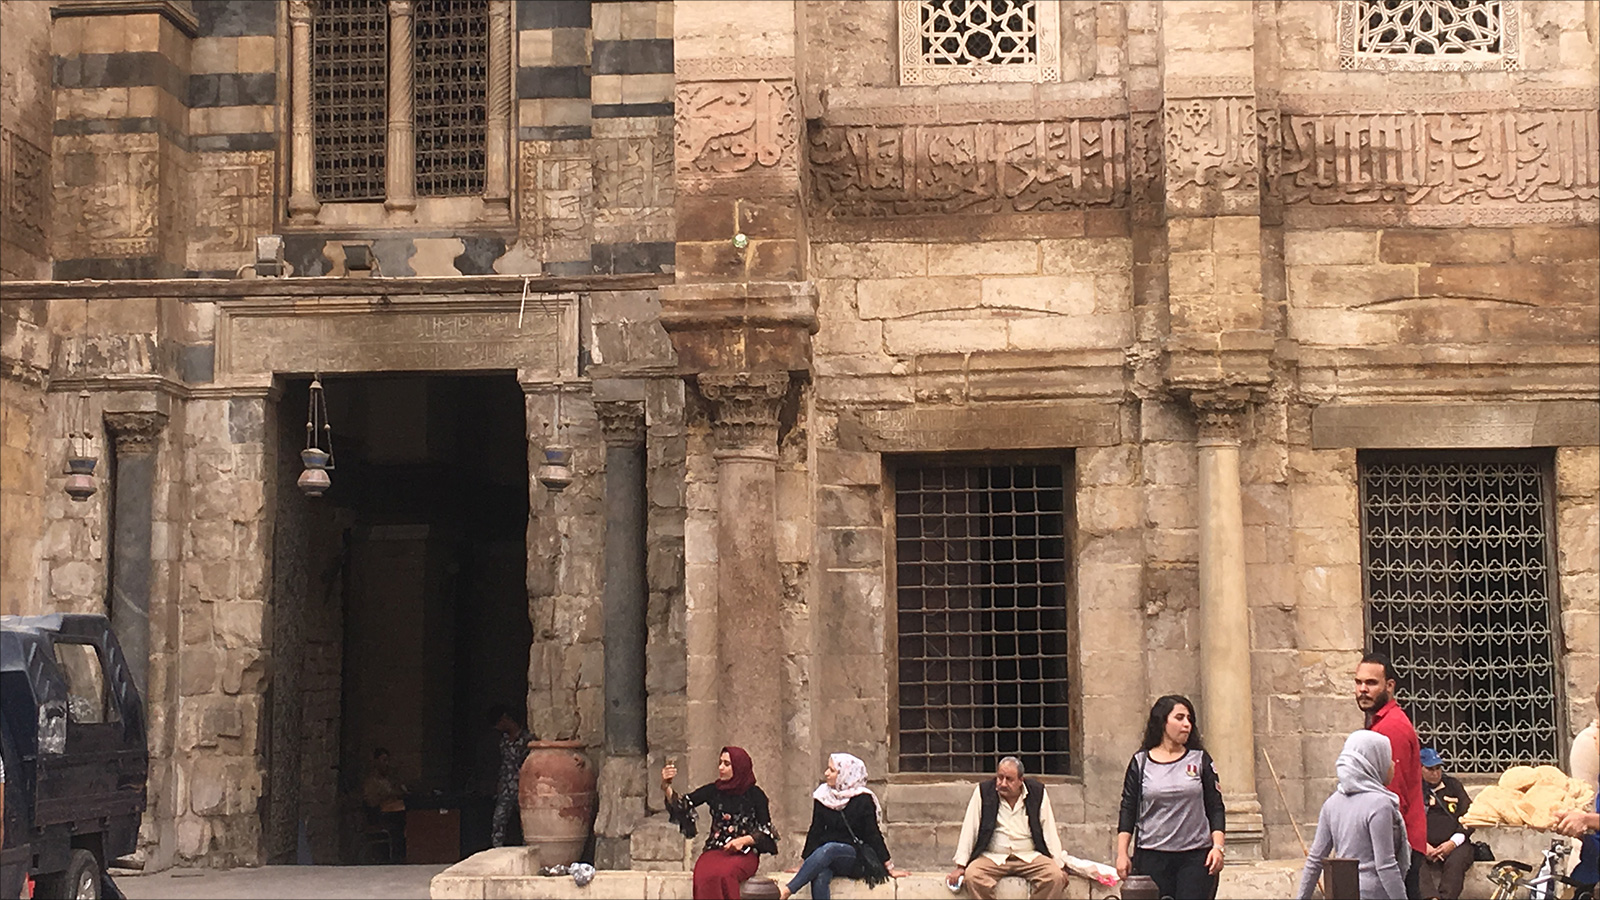 ‪اللقب أعلى النافذة المجاورة لمدخل مجموعة السلطان المنصور قلاوون بالقاهرة‬ (الجزيرة)